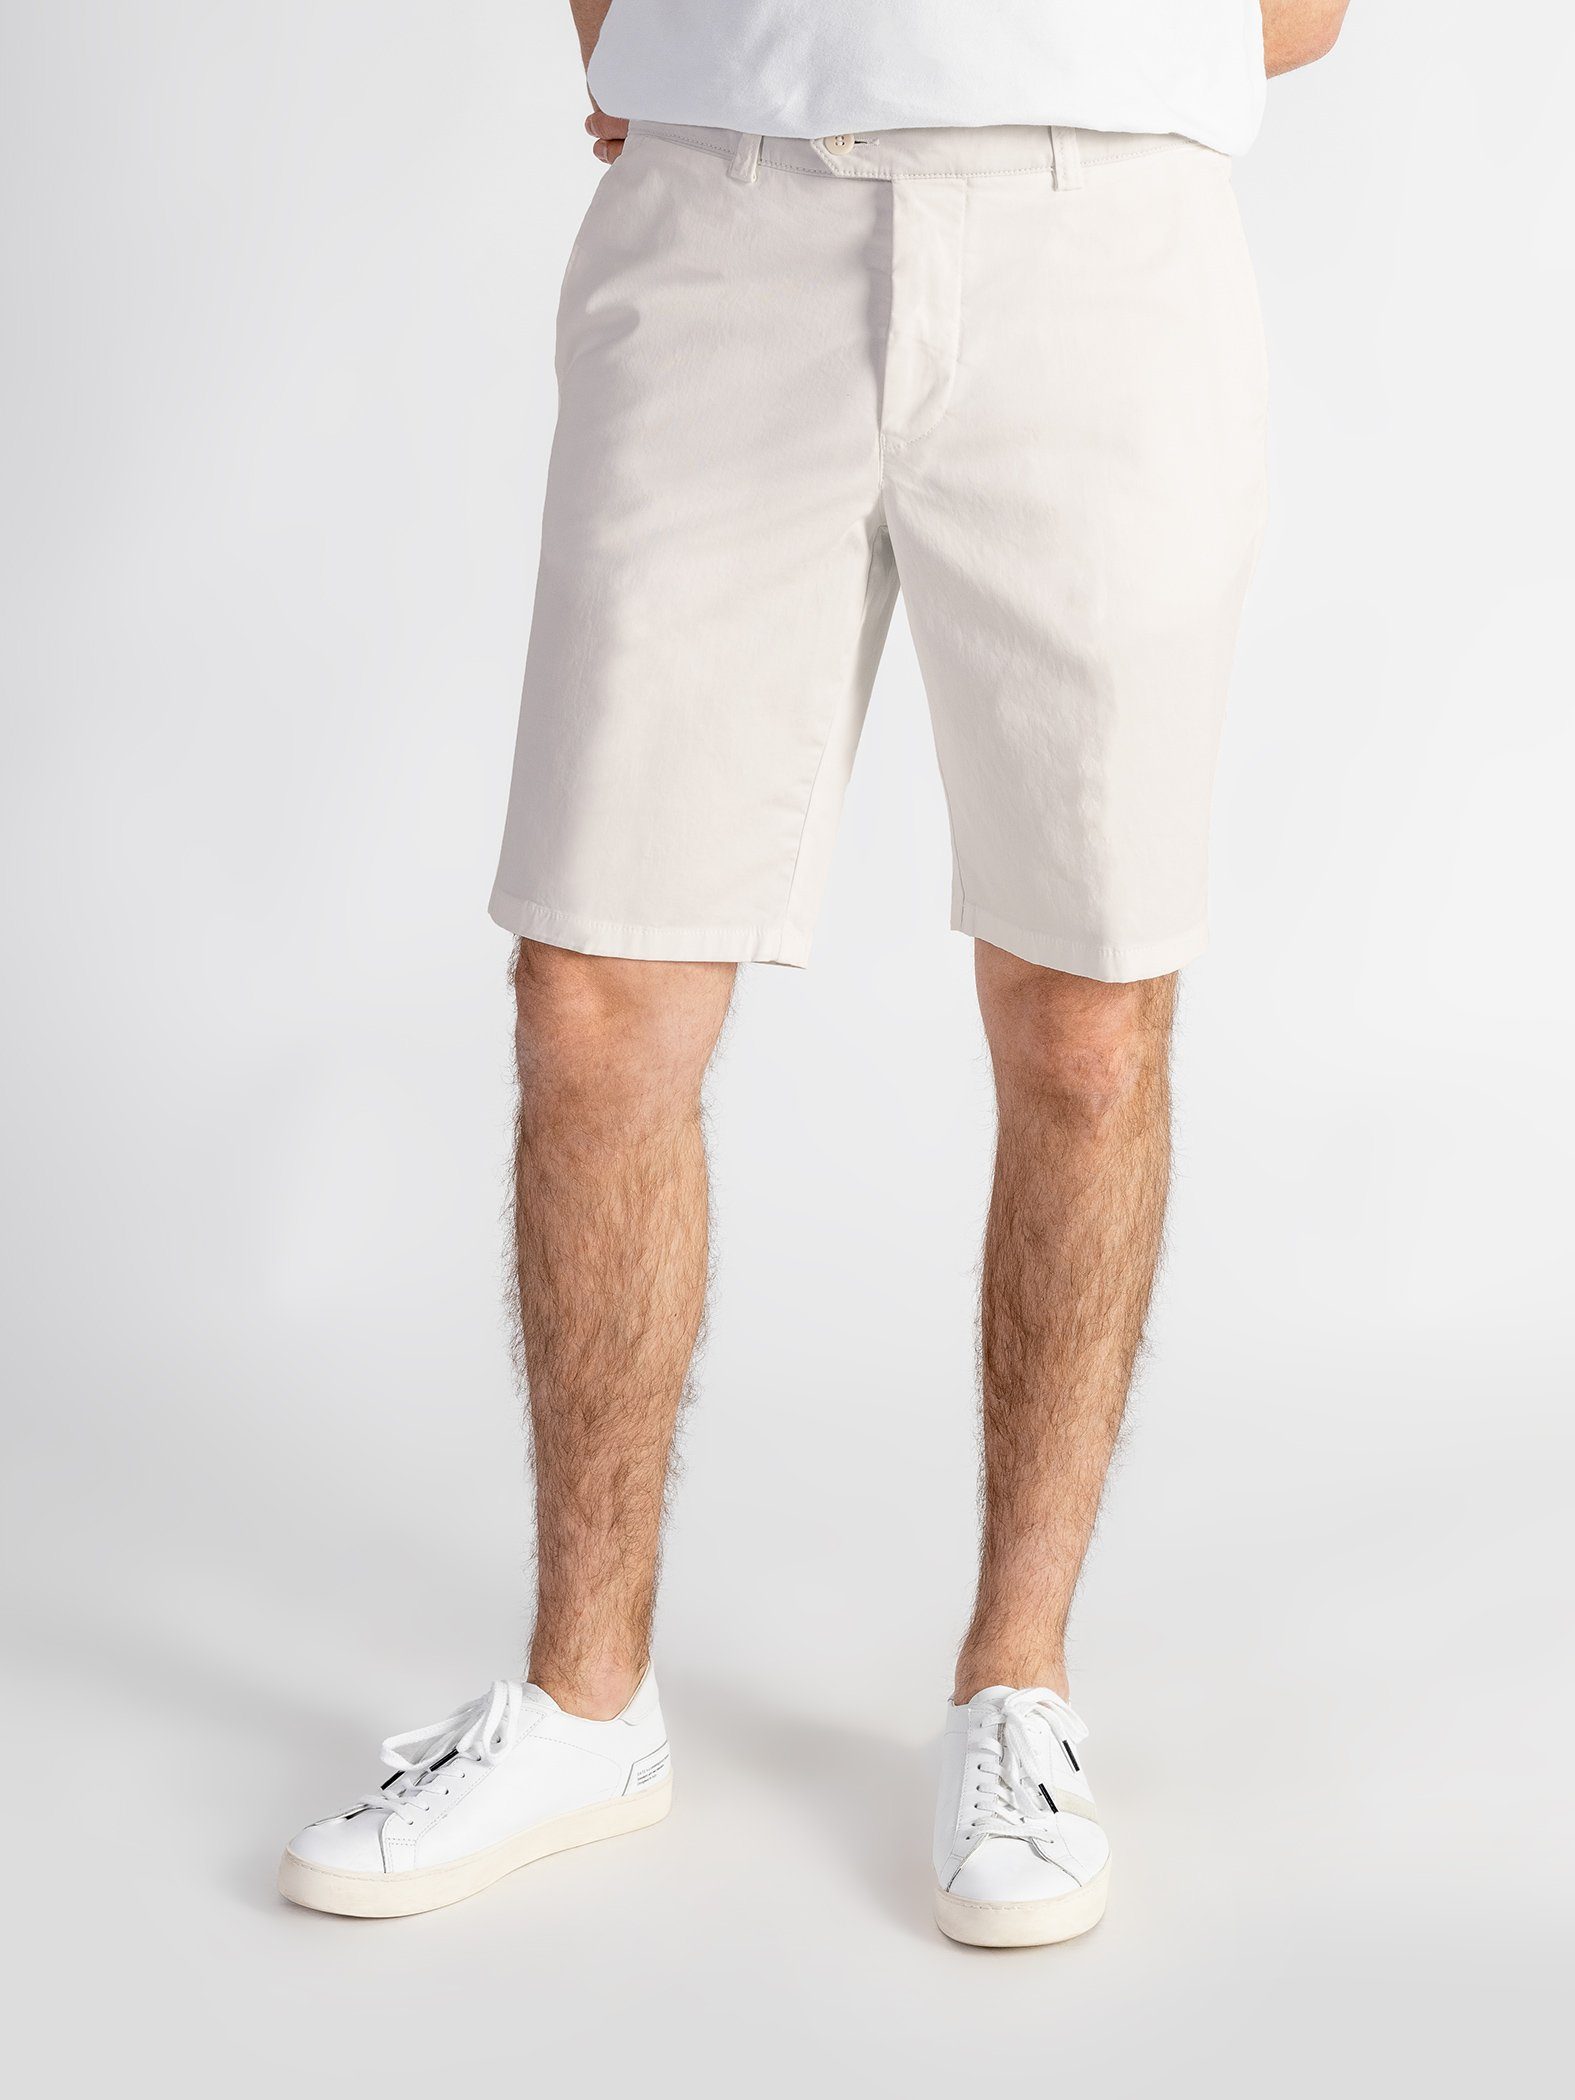 TwoMates Shorts Shorts mit elastischem Bund, Farbauswahl, GOTS-zertifiziert hellbeige